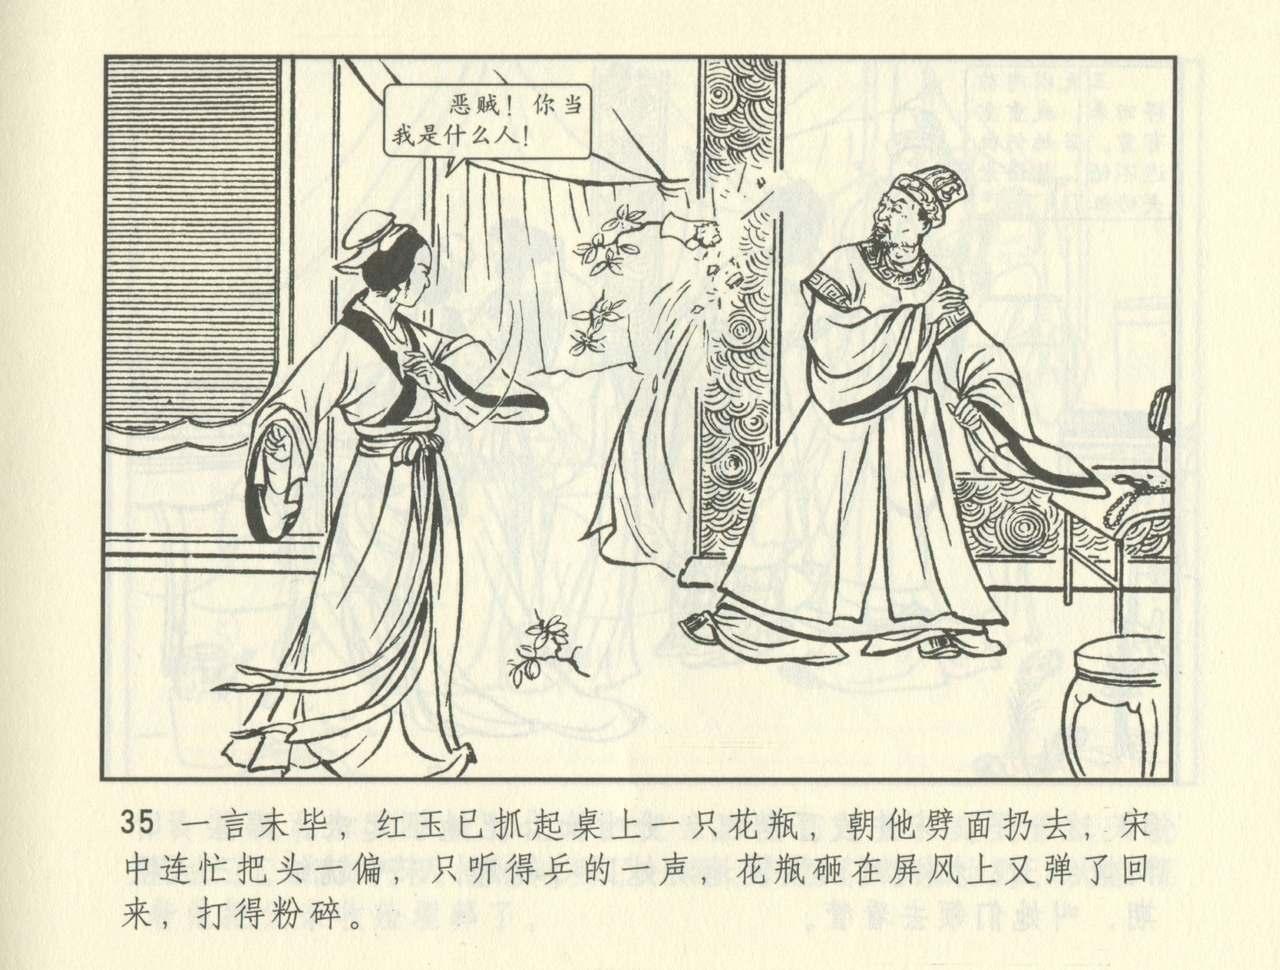 聊斋志异 张玮等绘 天津人民美术出版社 卷二十一 ~ 三十 375